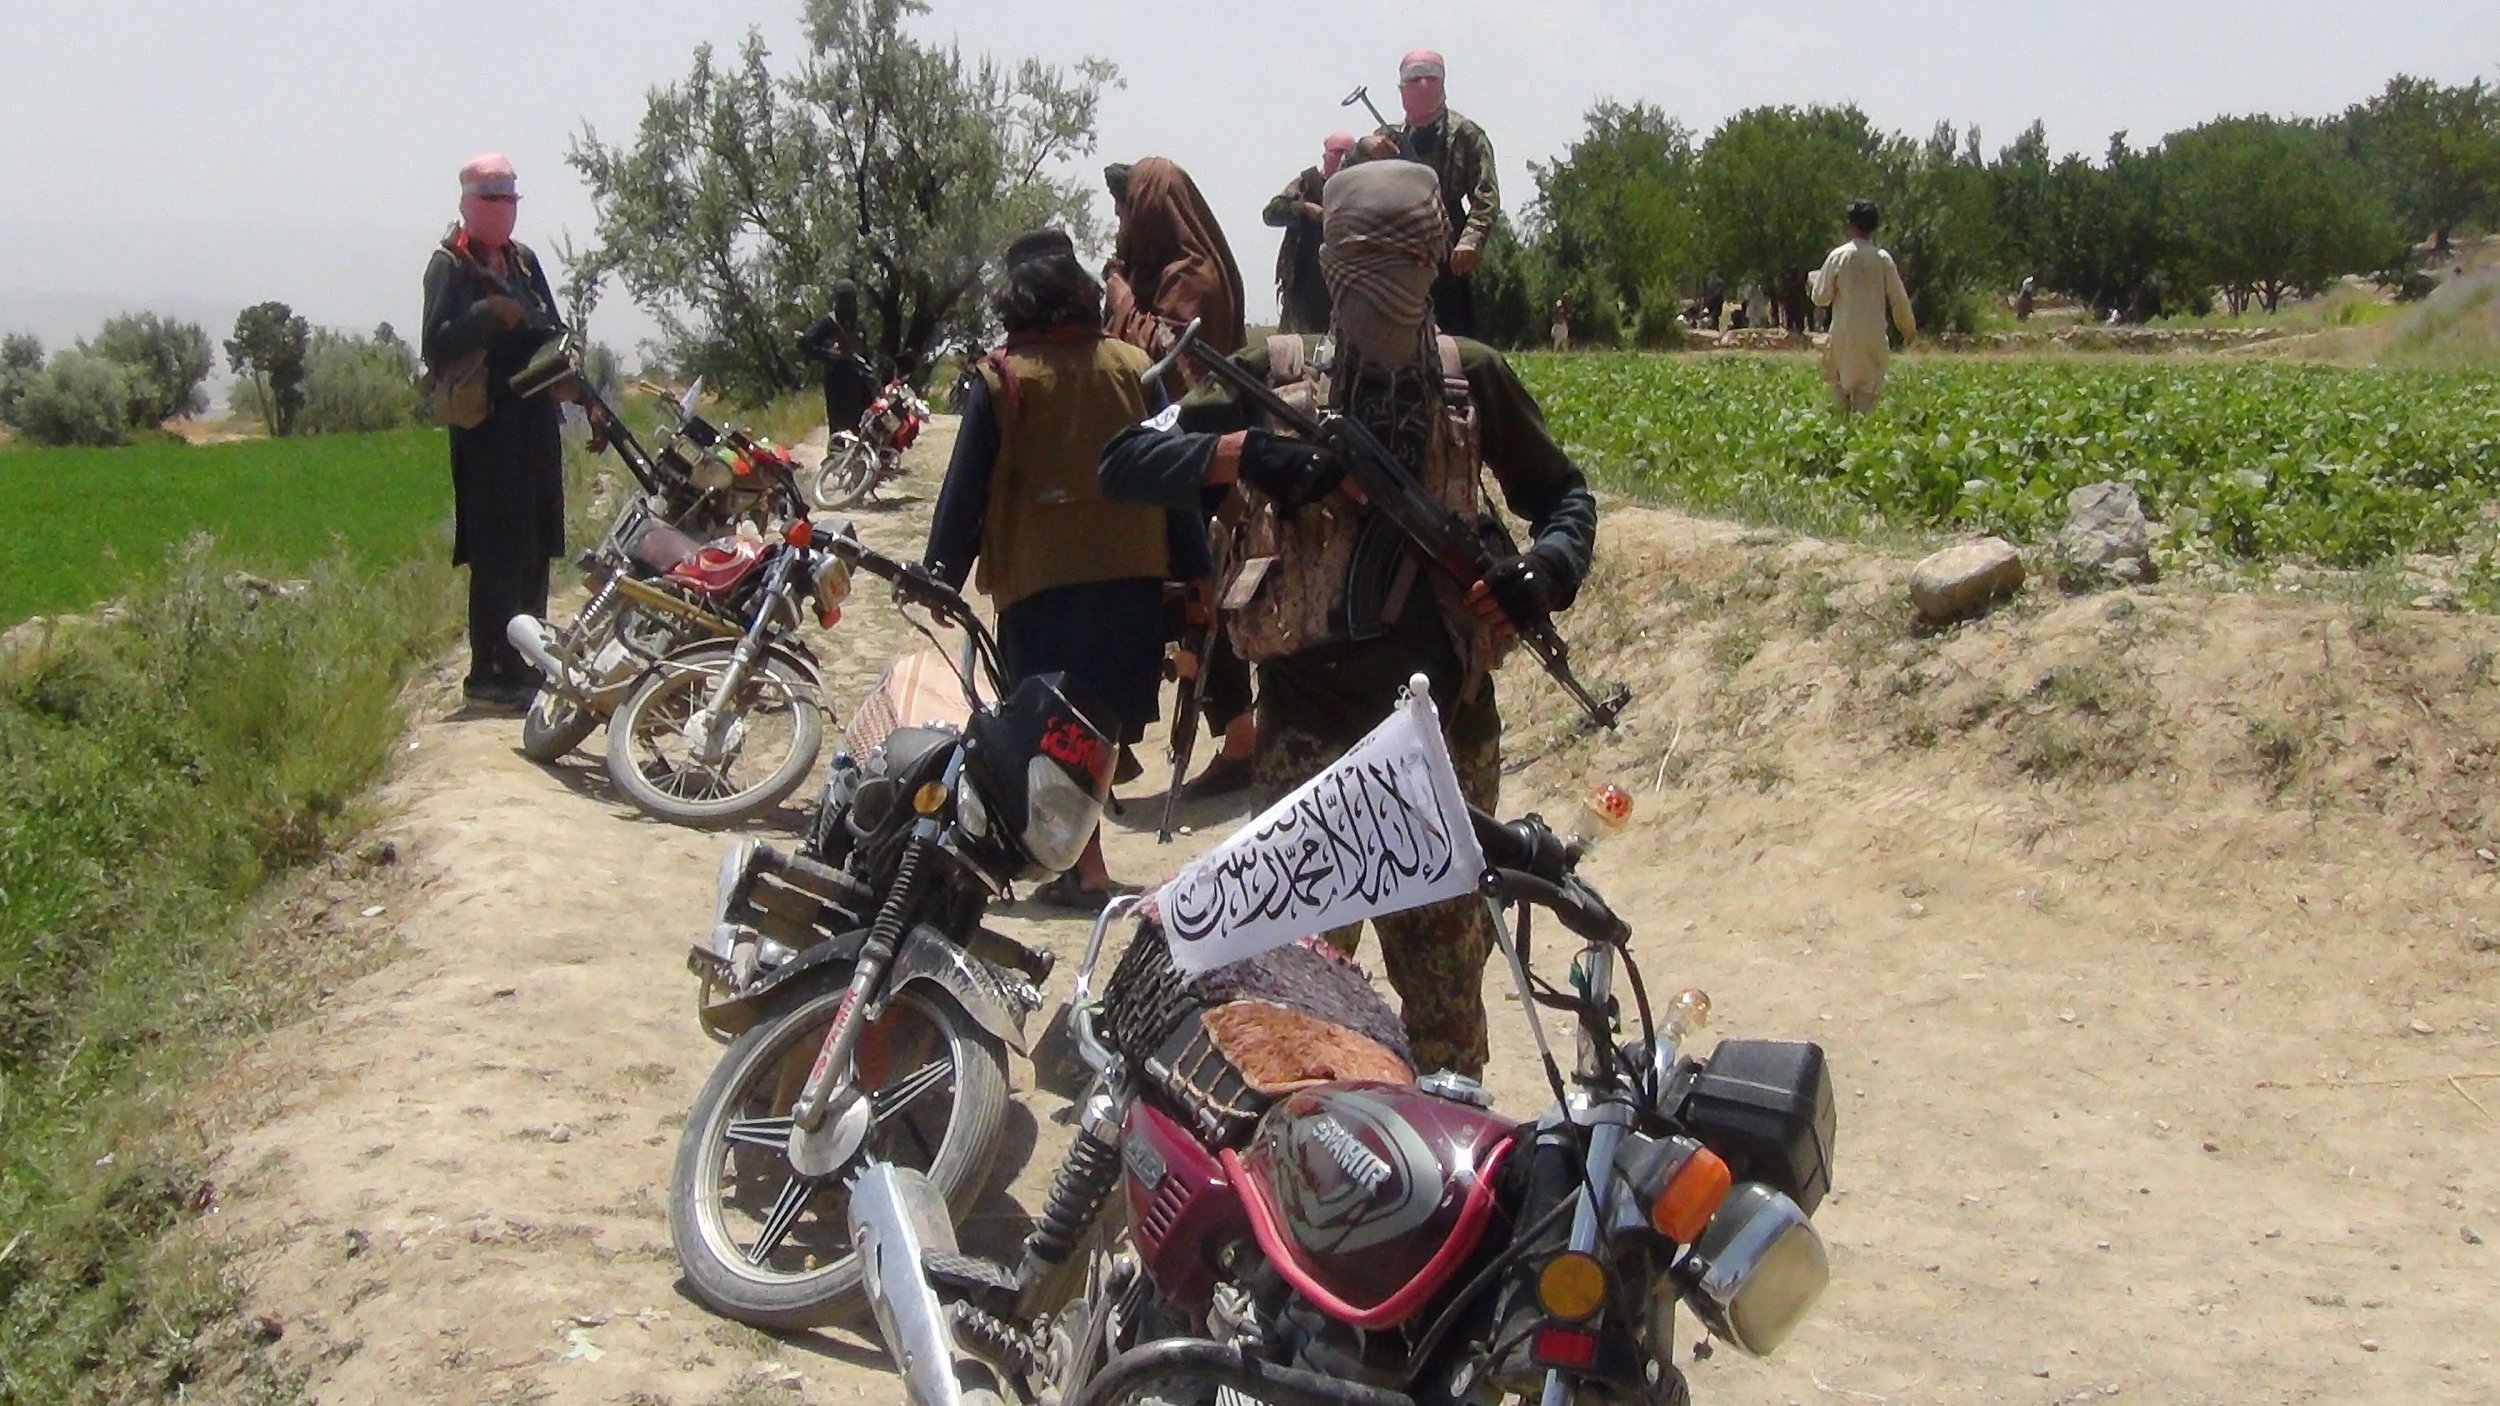 02_21_Taliban_Militia